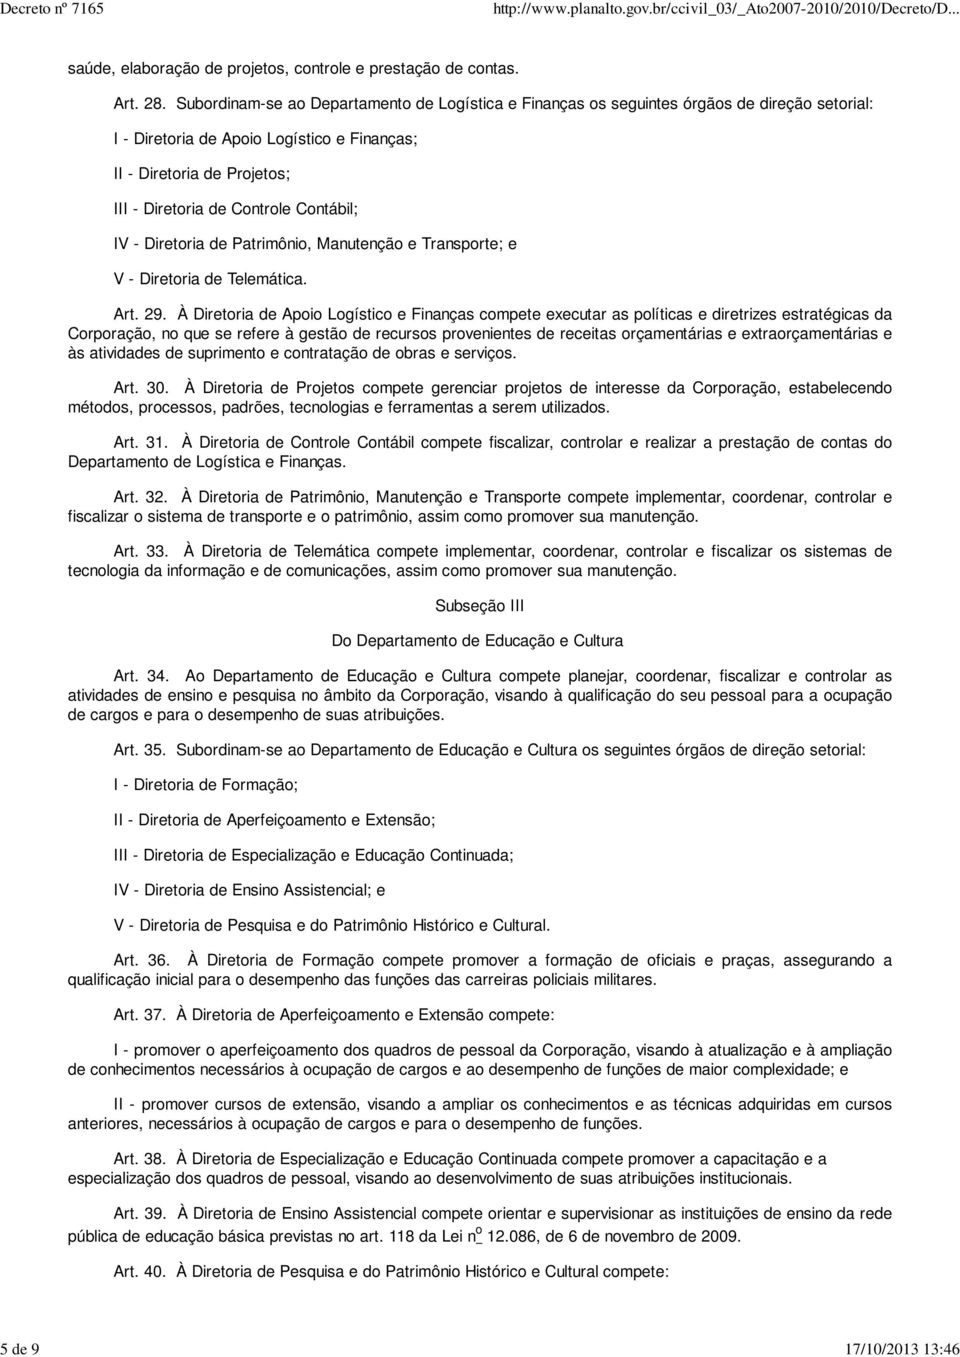 Contábil; IV - Diretoria de Patrimônio, Manutenção e Transporte; e V - Diretoria de Telemática. Art. 29.